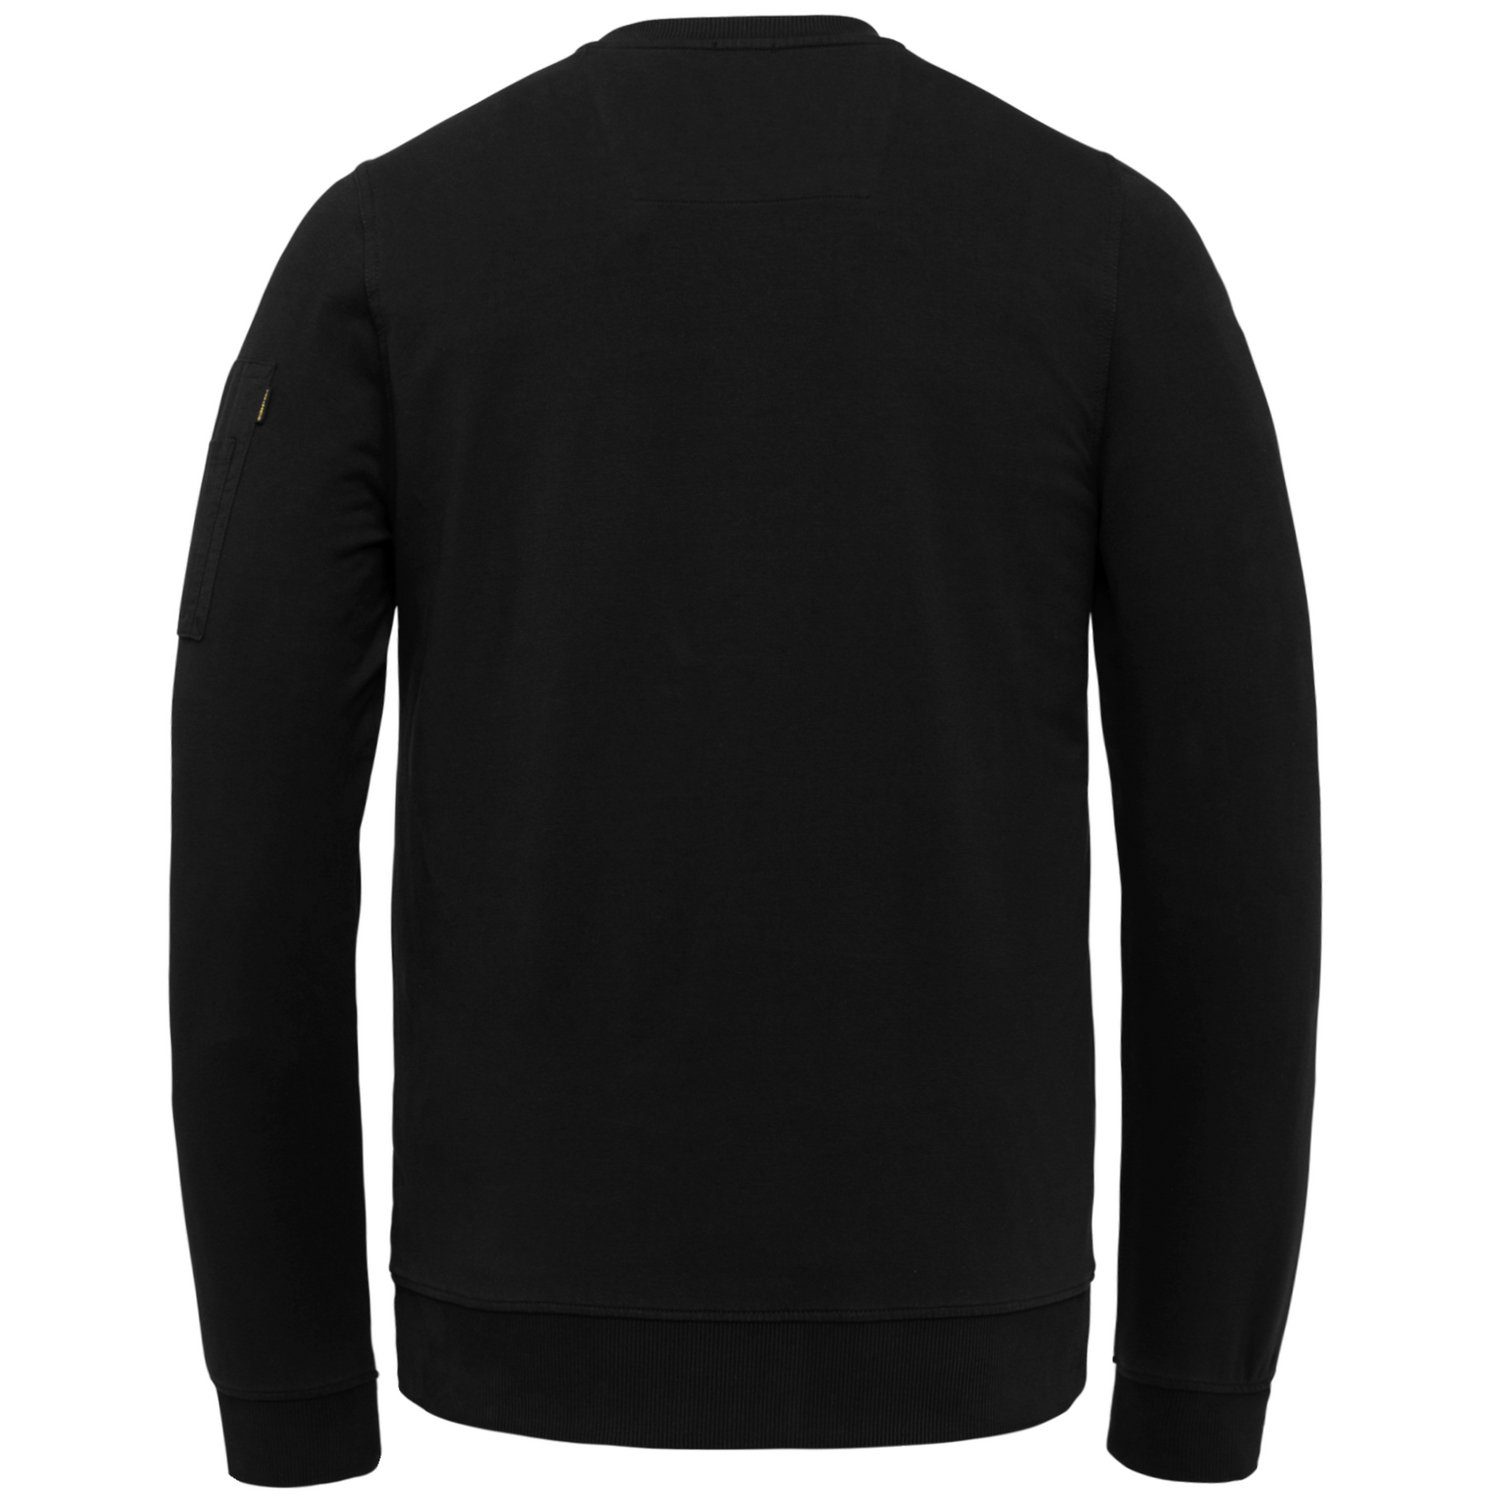 AIRSTRIP Baumwollmix 999 Sweatshirt aus Black PME LEGEND